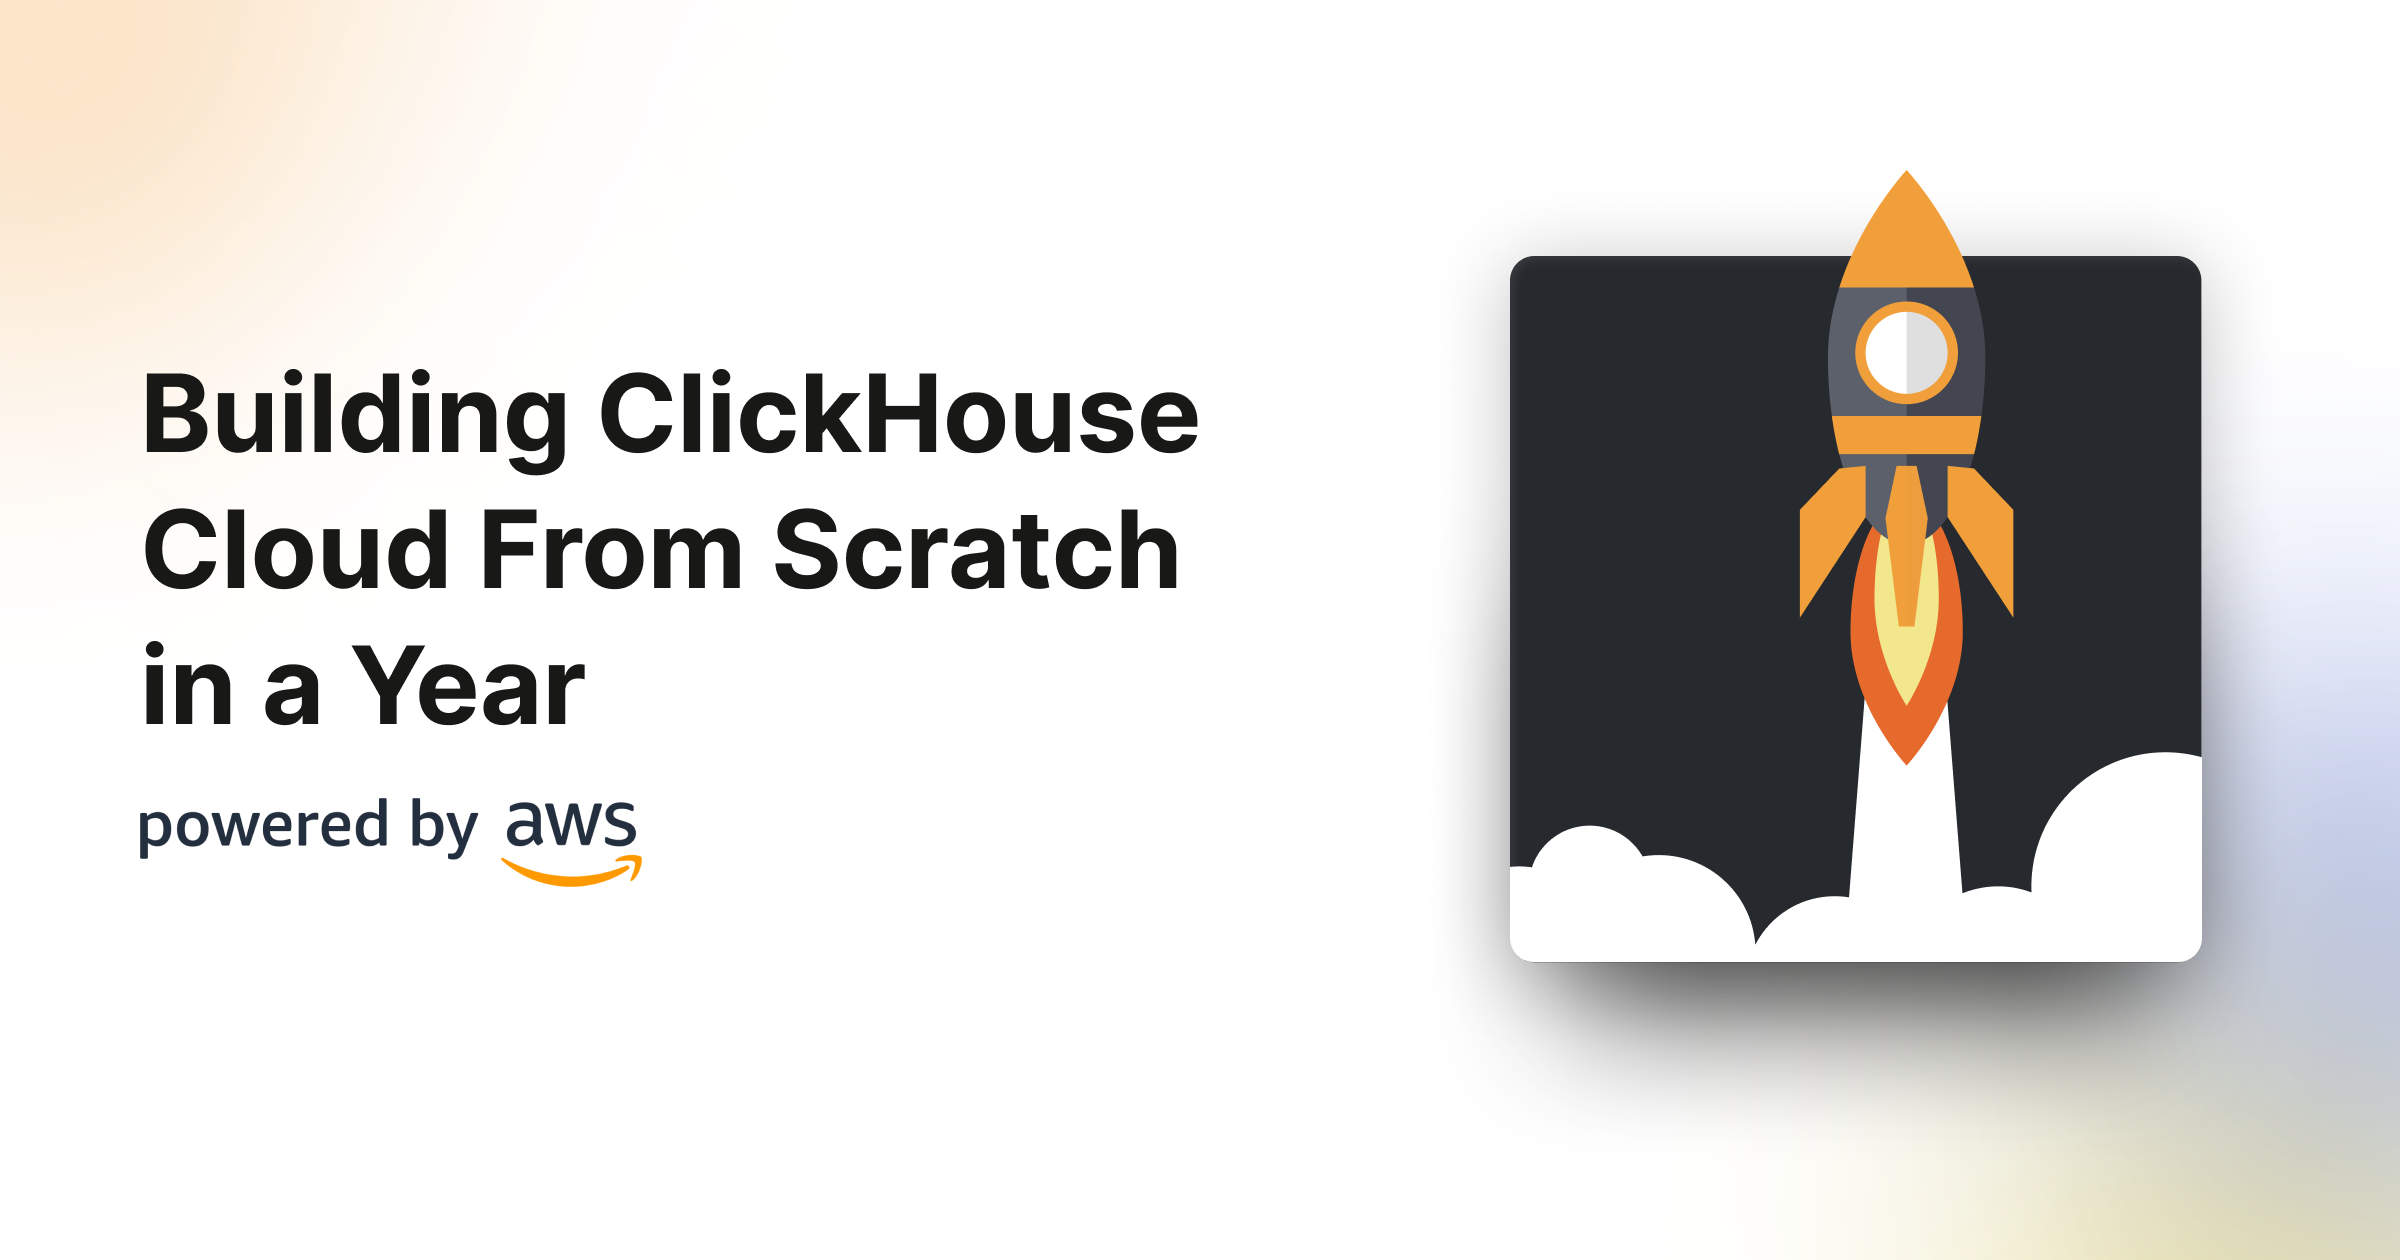 clickhouse.com image